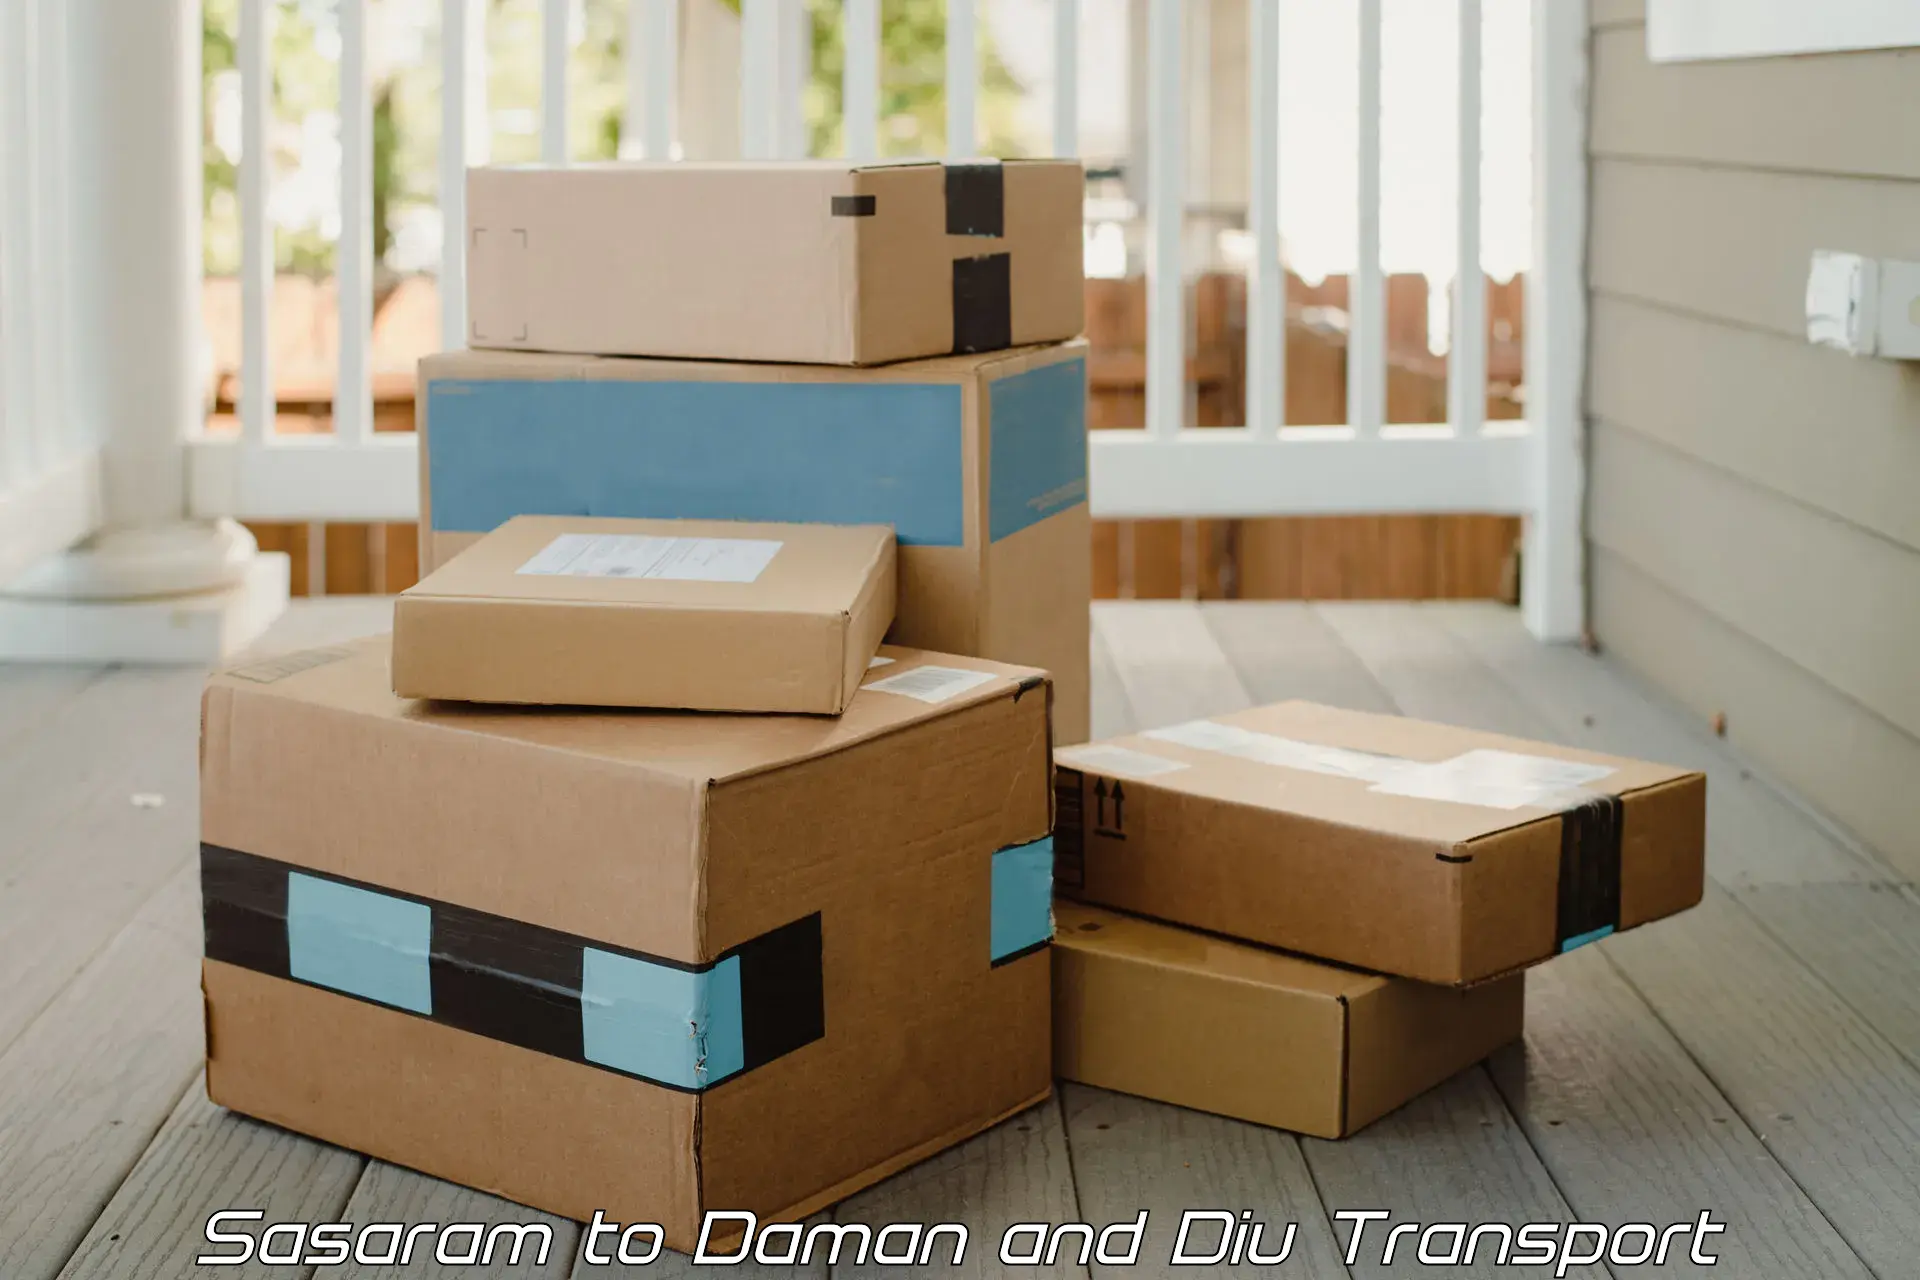 Furniture transport service Sasaram to Daman and Diu